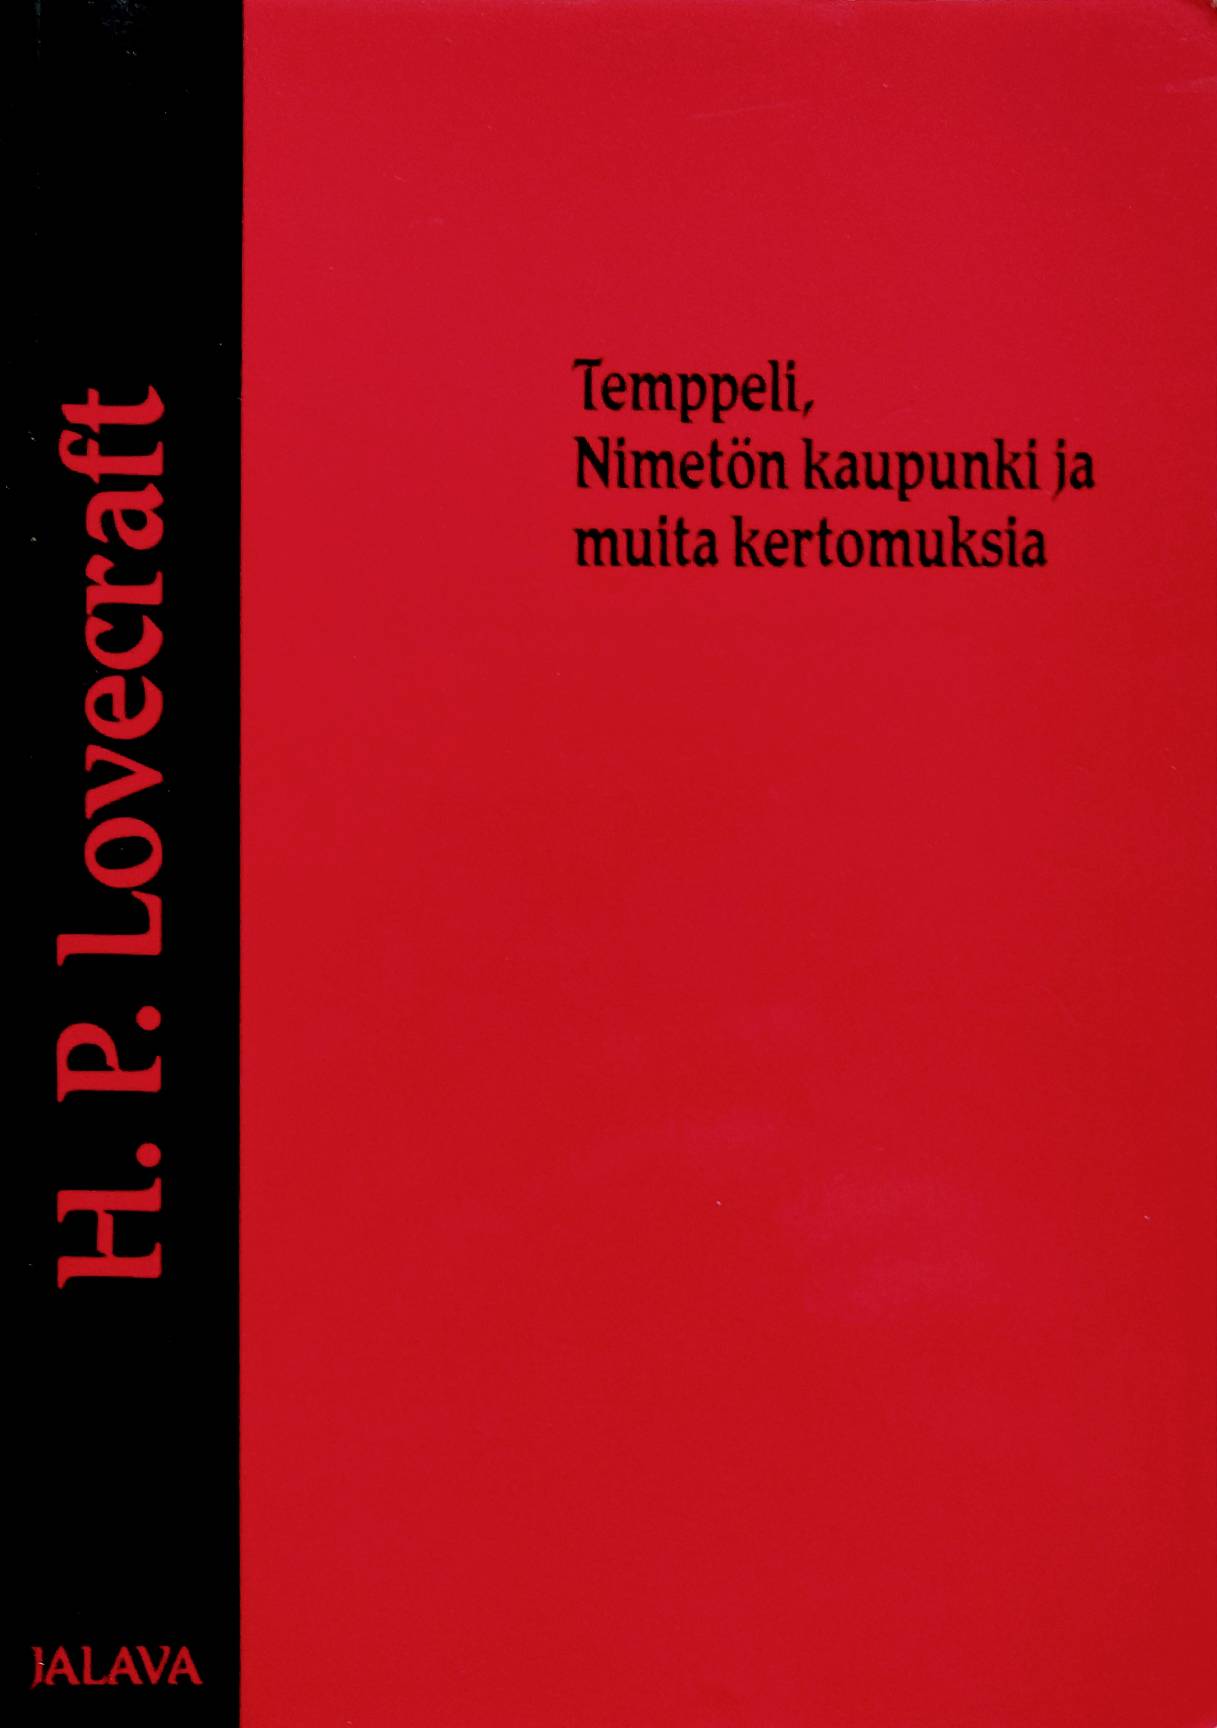 H. P. Lovecraft: Temppeli, Nimetön kaupunki ja muita kertomuksia (Paperback, Finnish language, 1998, Jalava)